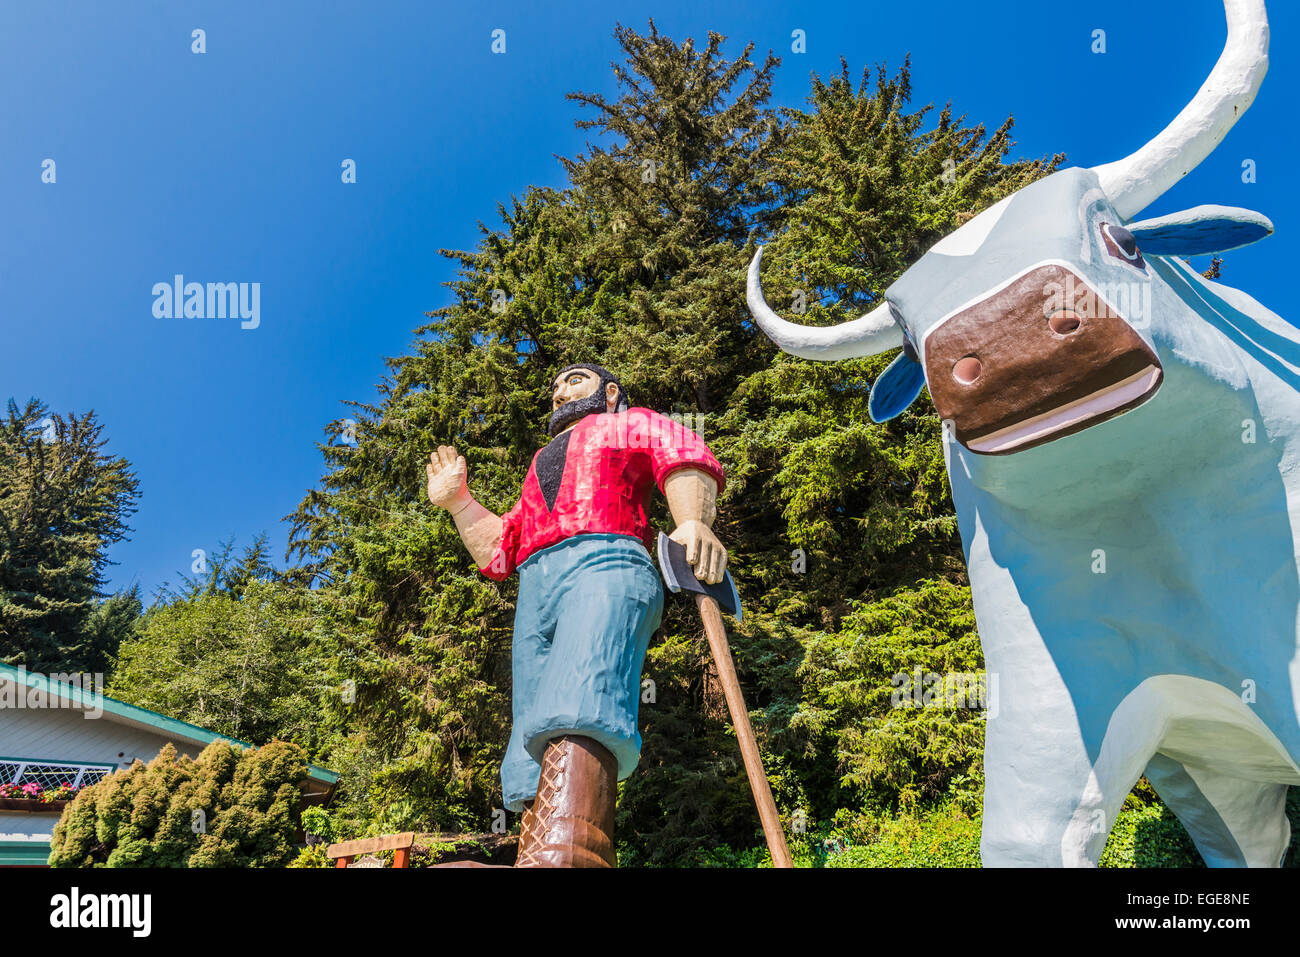 Paul Bunyan und Babe die Blue Ox Statuen. Bäume des Geheimnisses, Klamath, California, Vereinigte Staaten von Amerika. Stockfoto